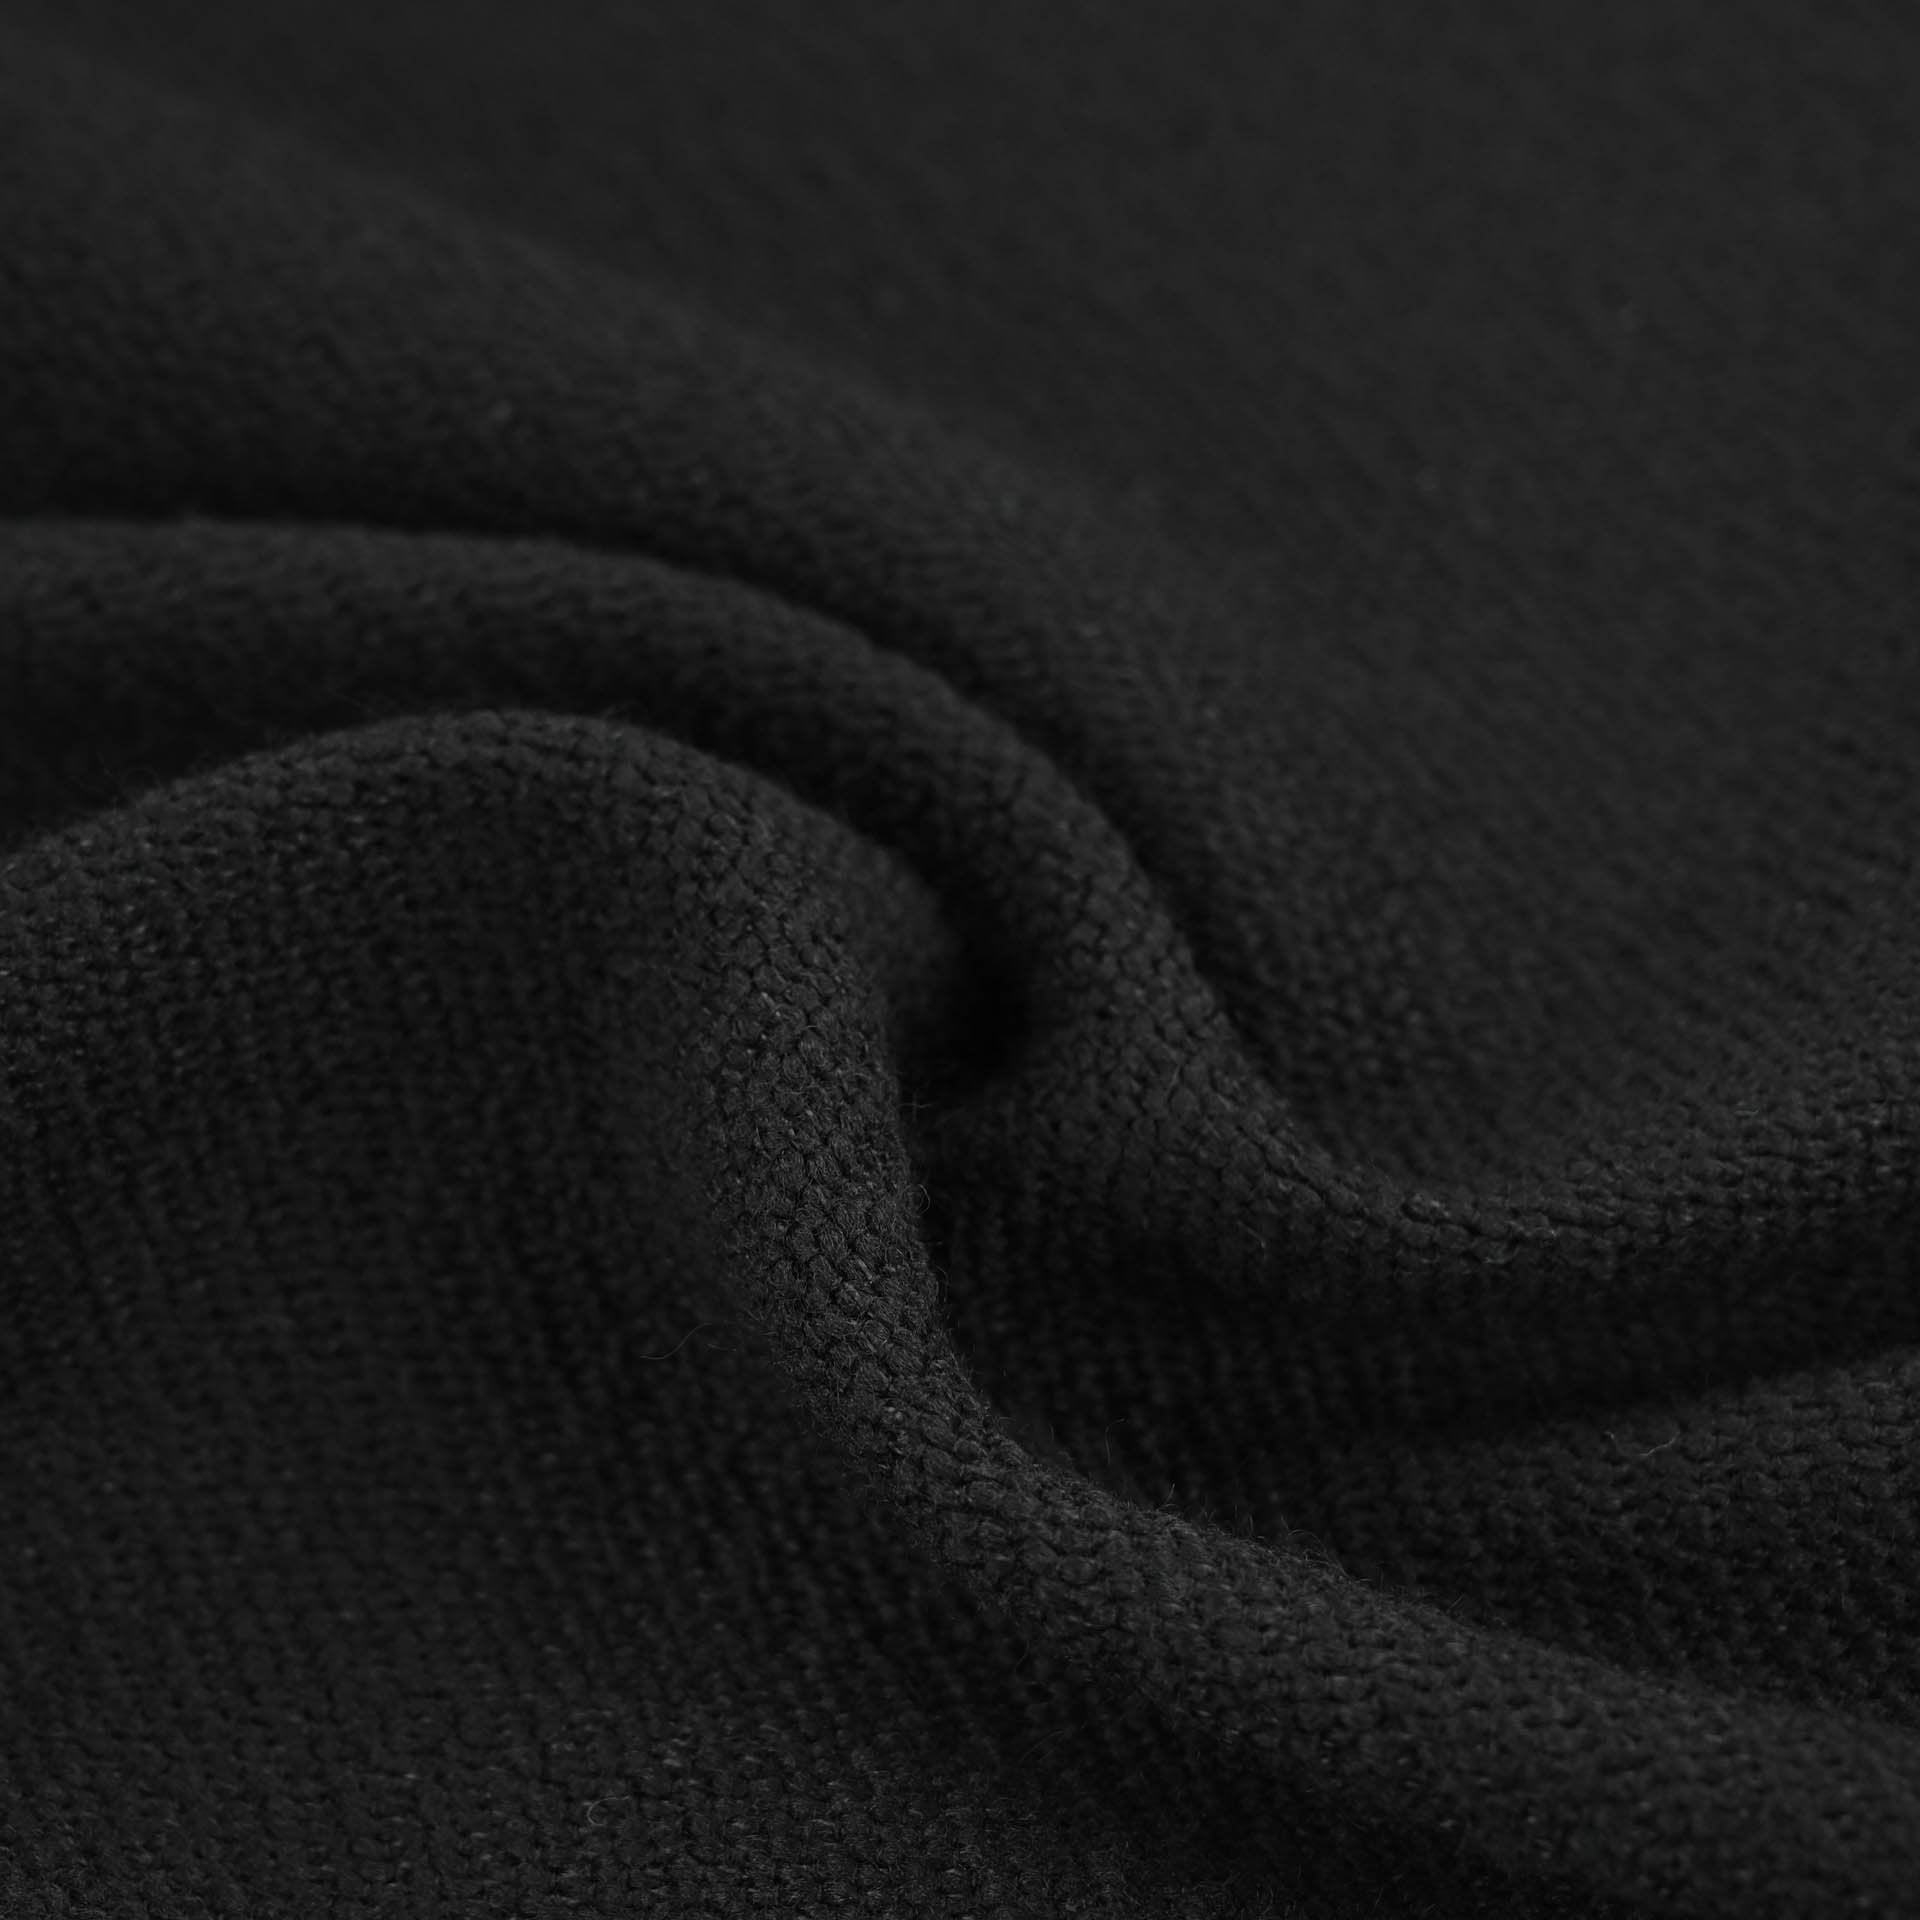 Black Coating Fabric 96905